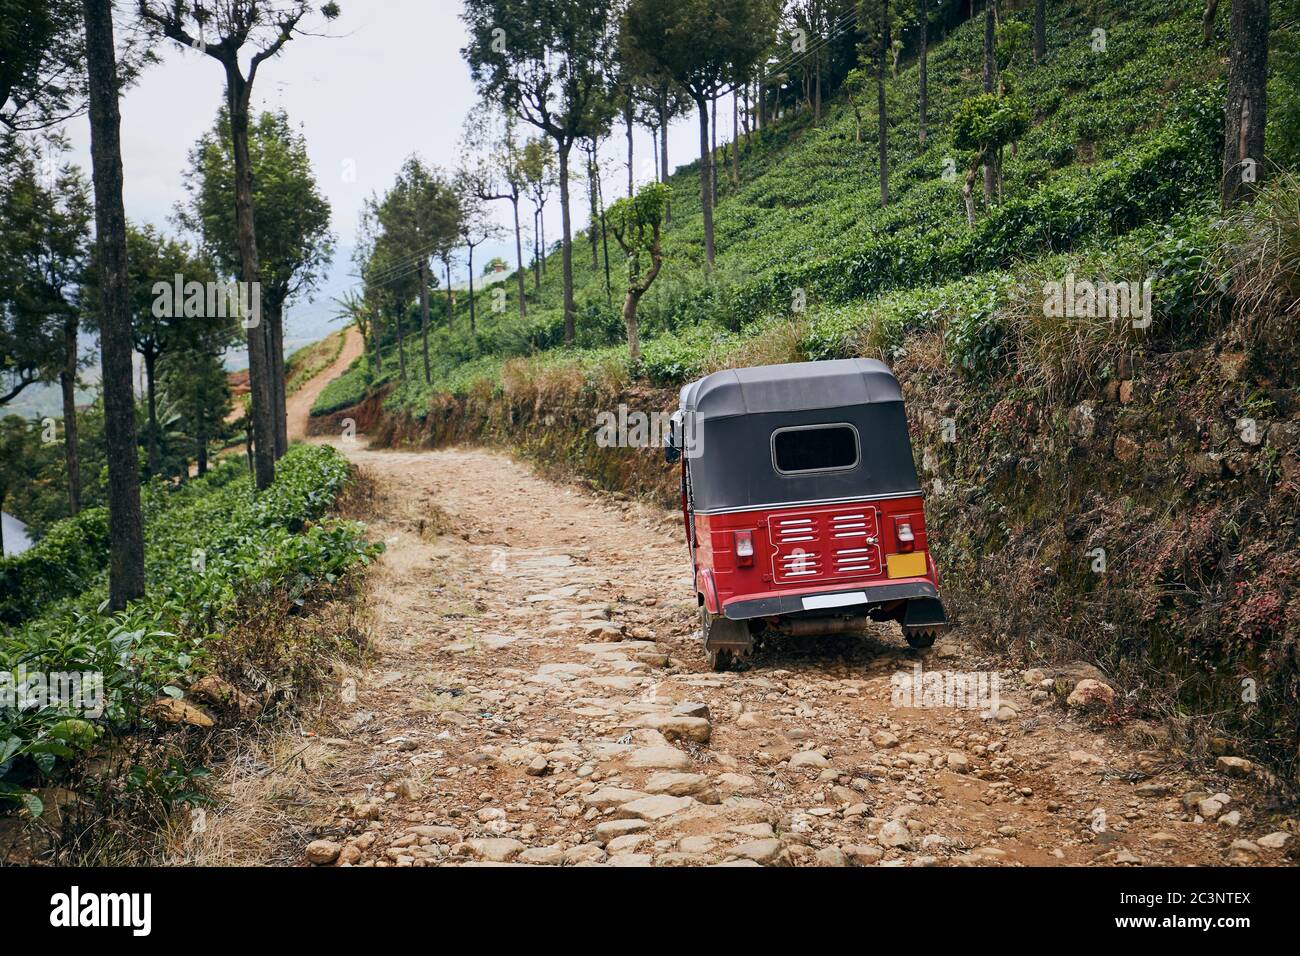 Tuk rouge sur la route de terre au milieu de la plantation de thé, Sri Lanka Banque D'Images